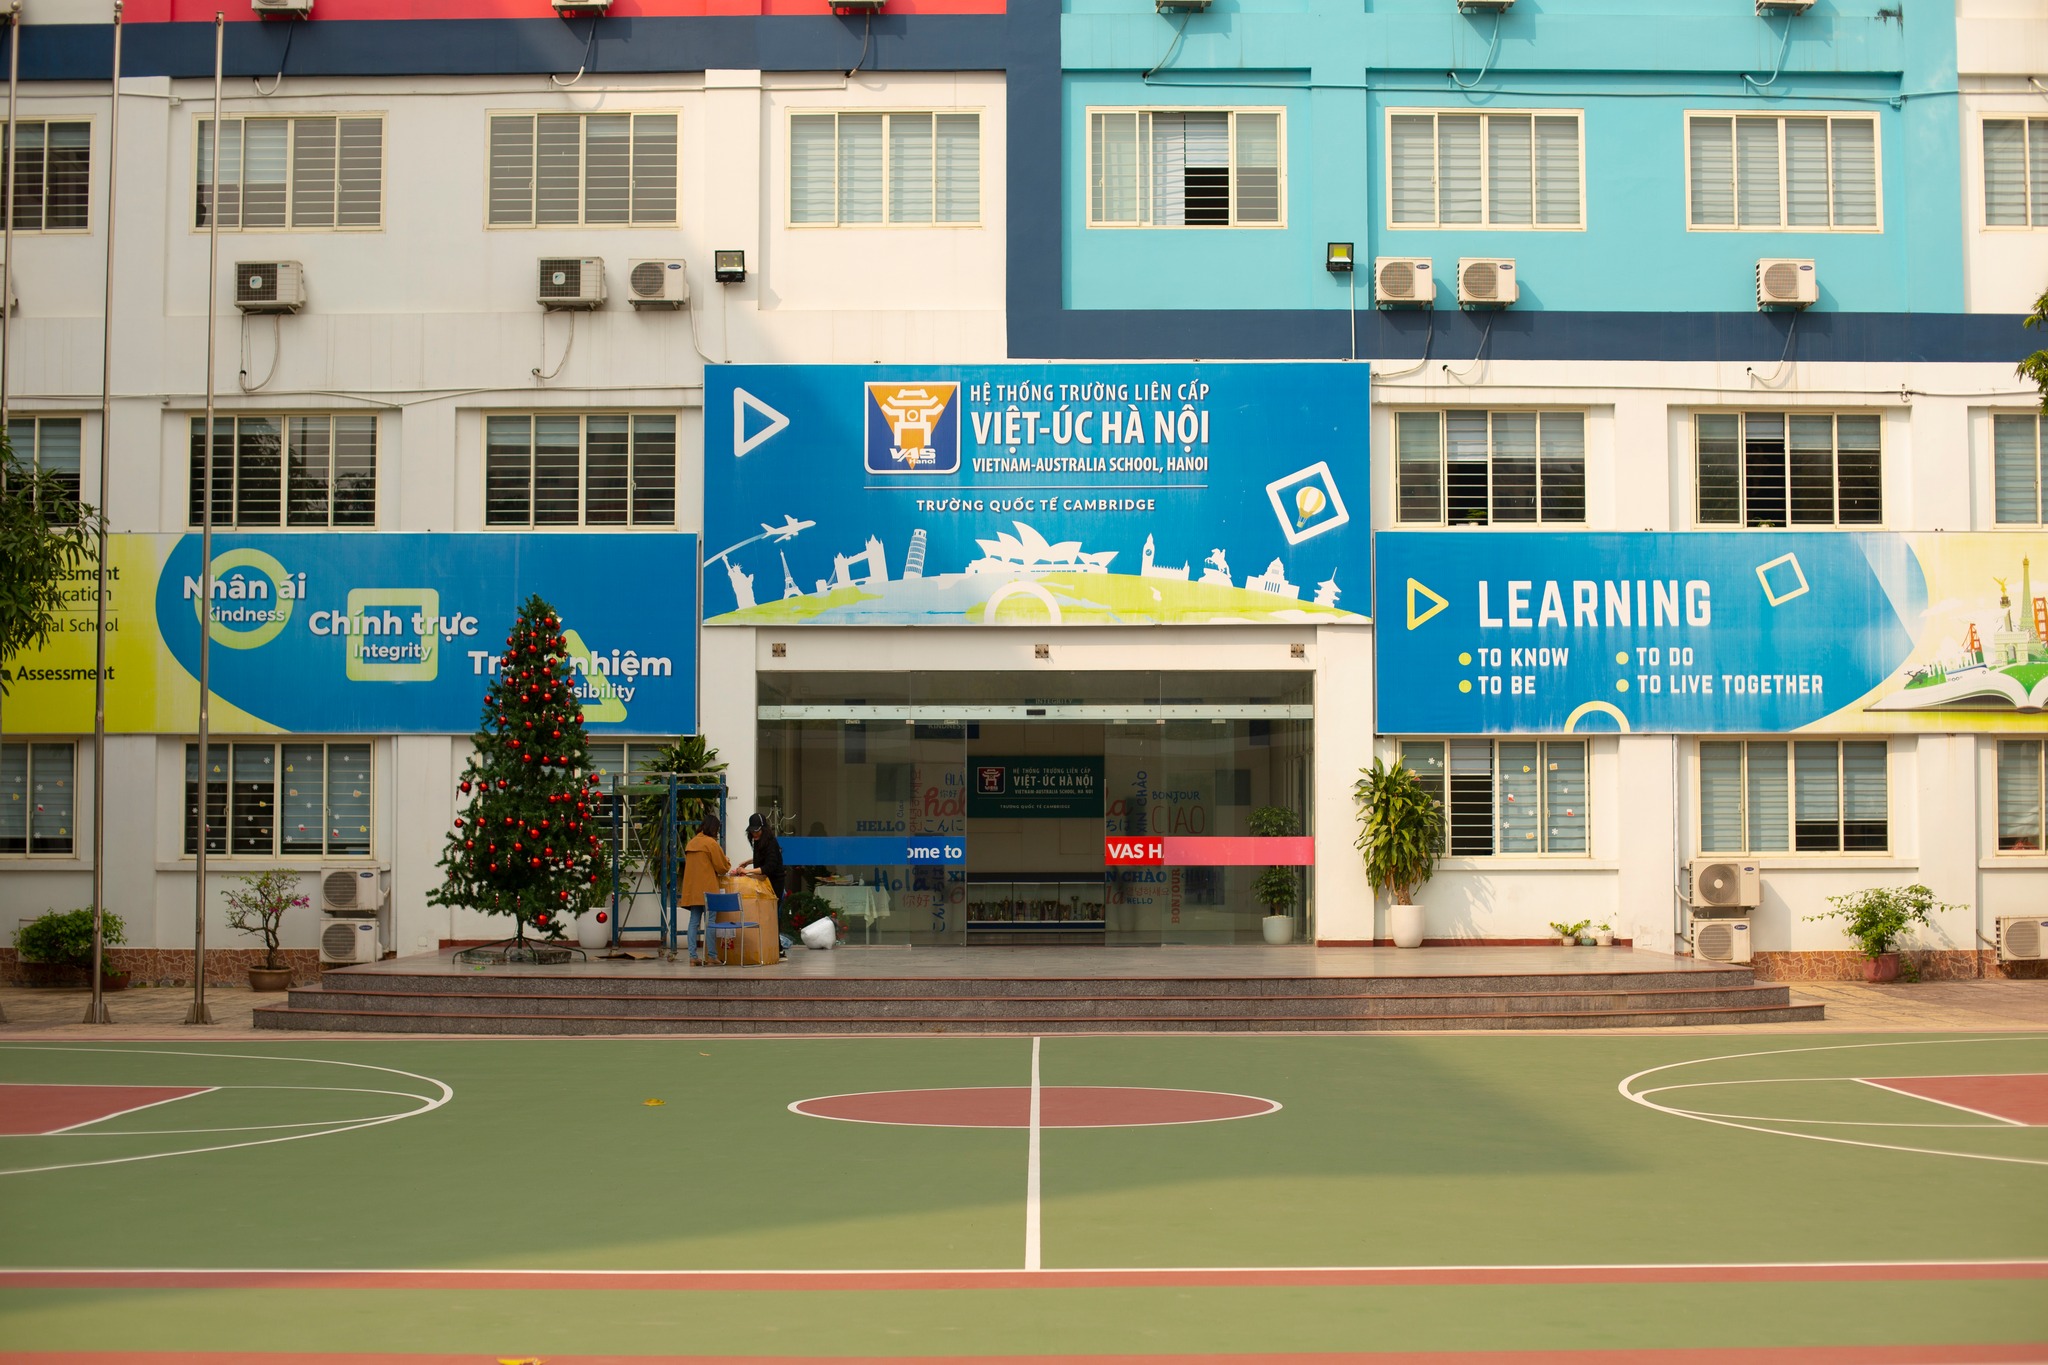 Trường quốc tế Liên cấp Việt – Úc Hà Nội ảnh 1